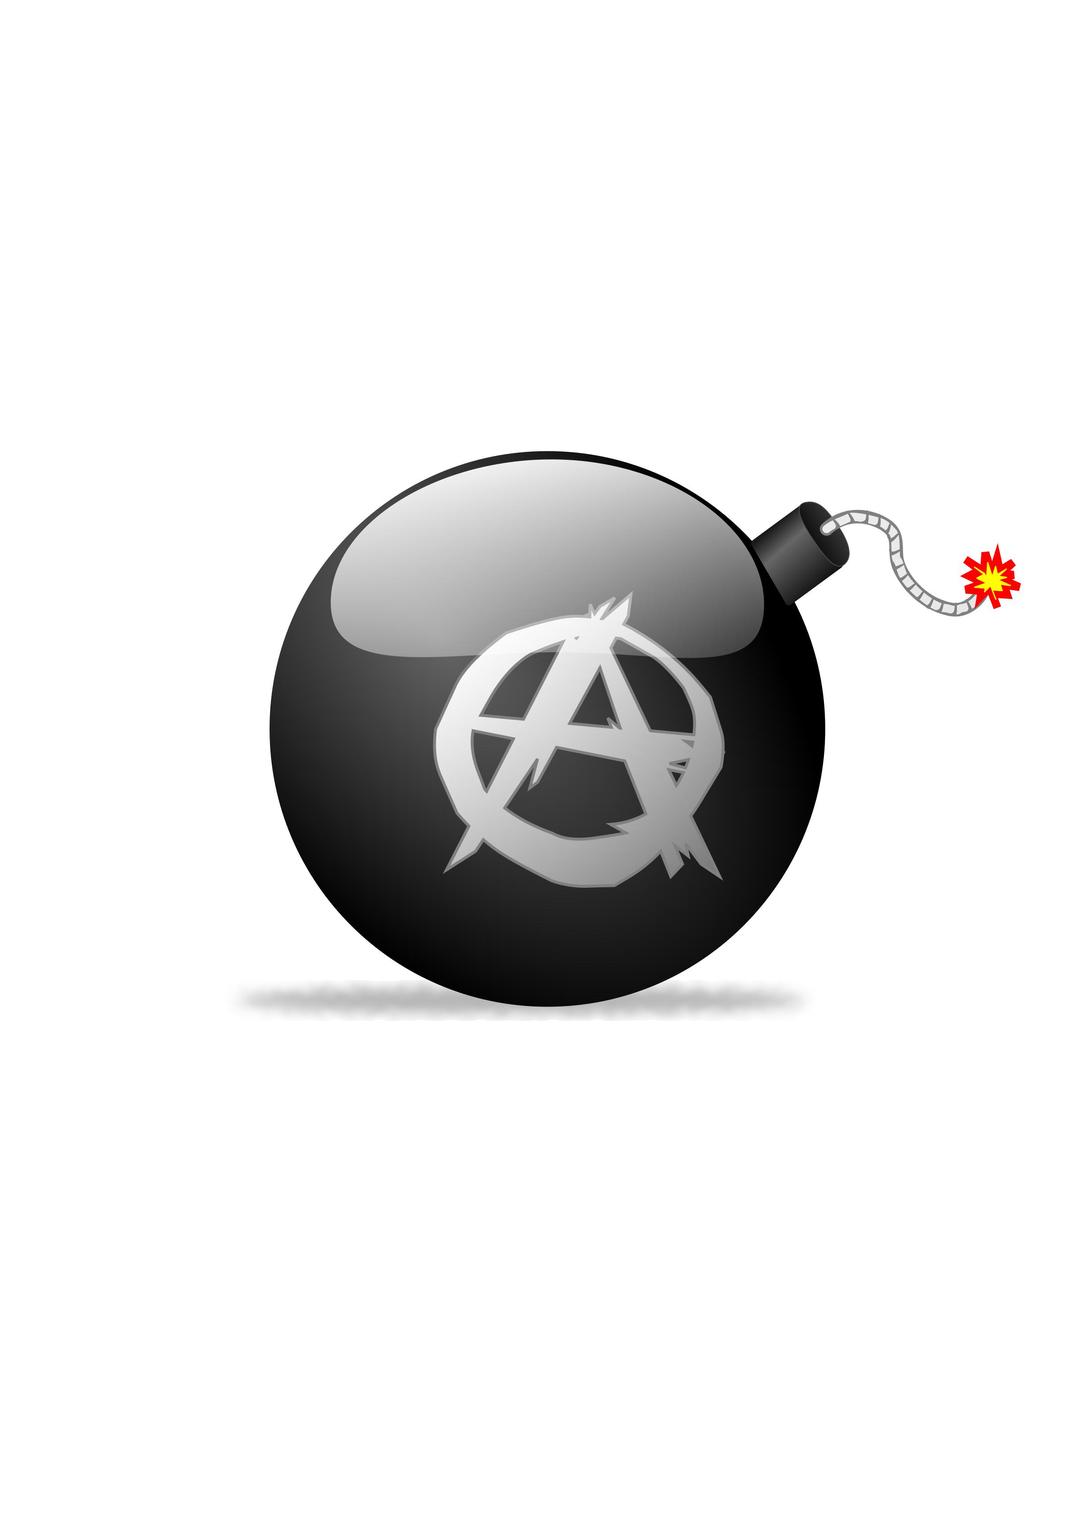 Anarchist Bomb (v1) png transparent